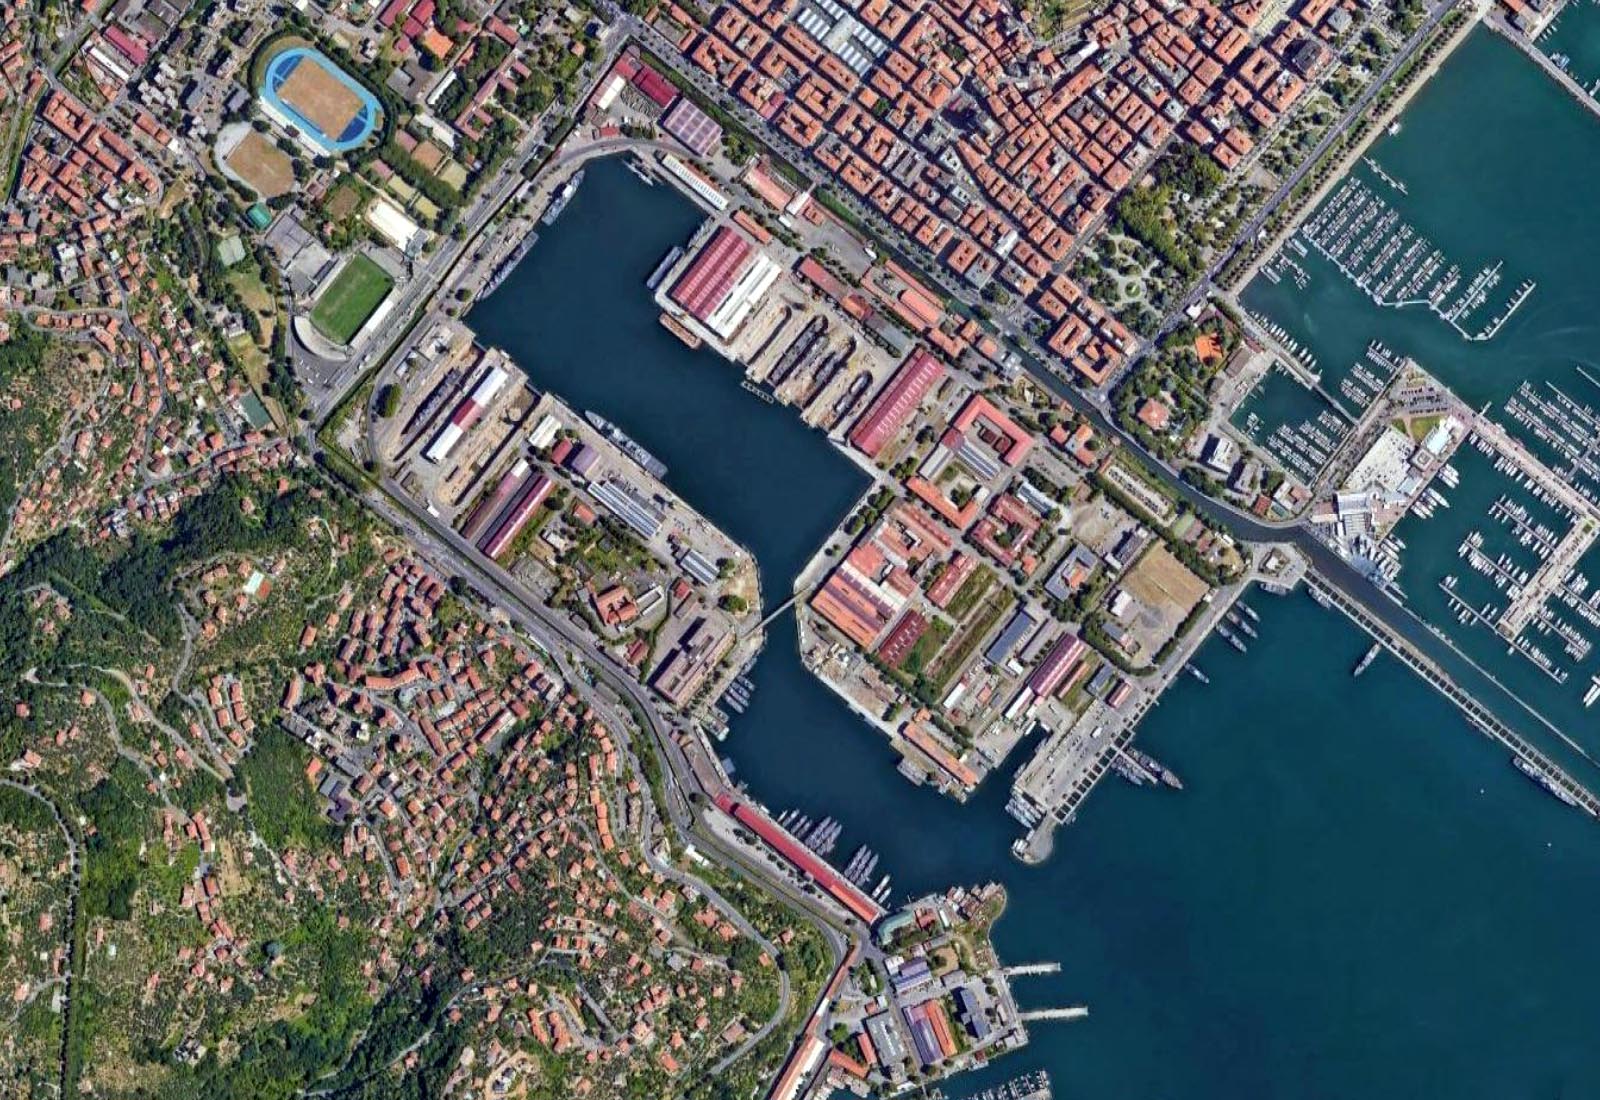 Officina di manutenzione presso l’Arsenale di La Spezia - Il porto